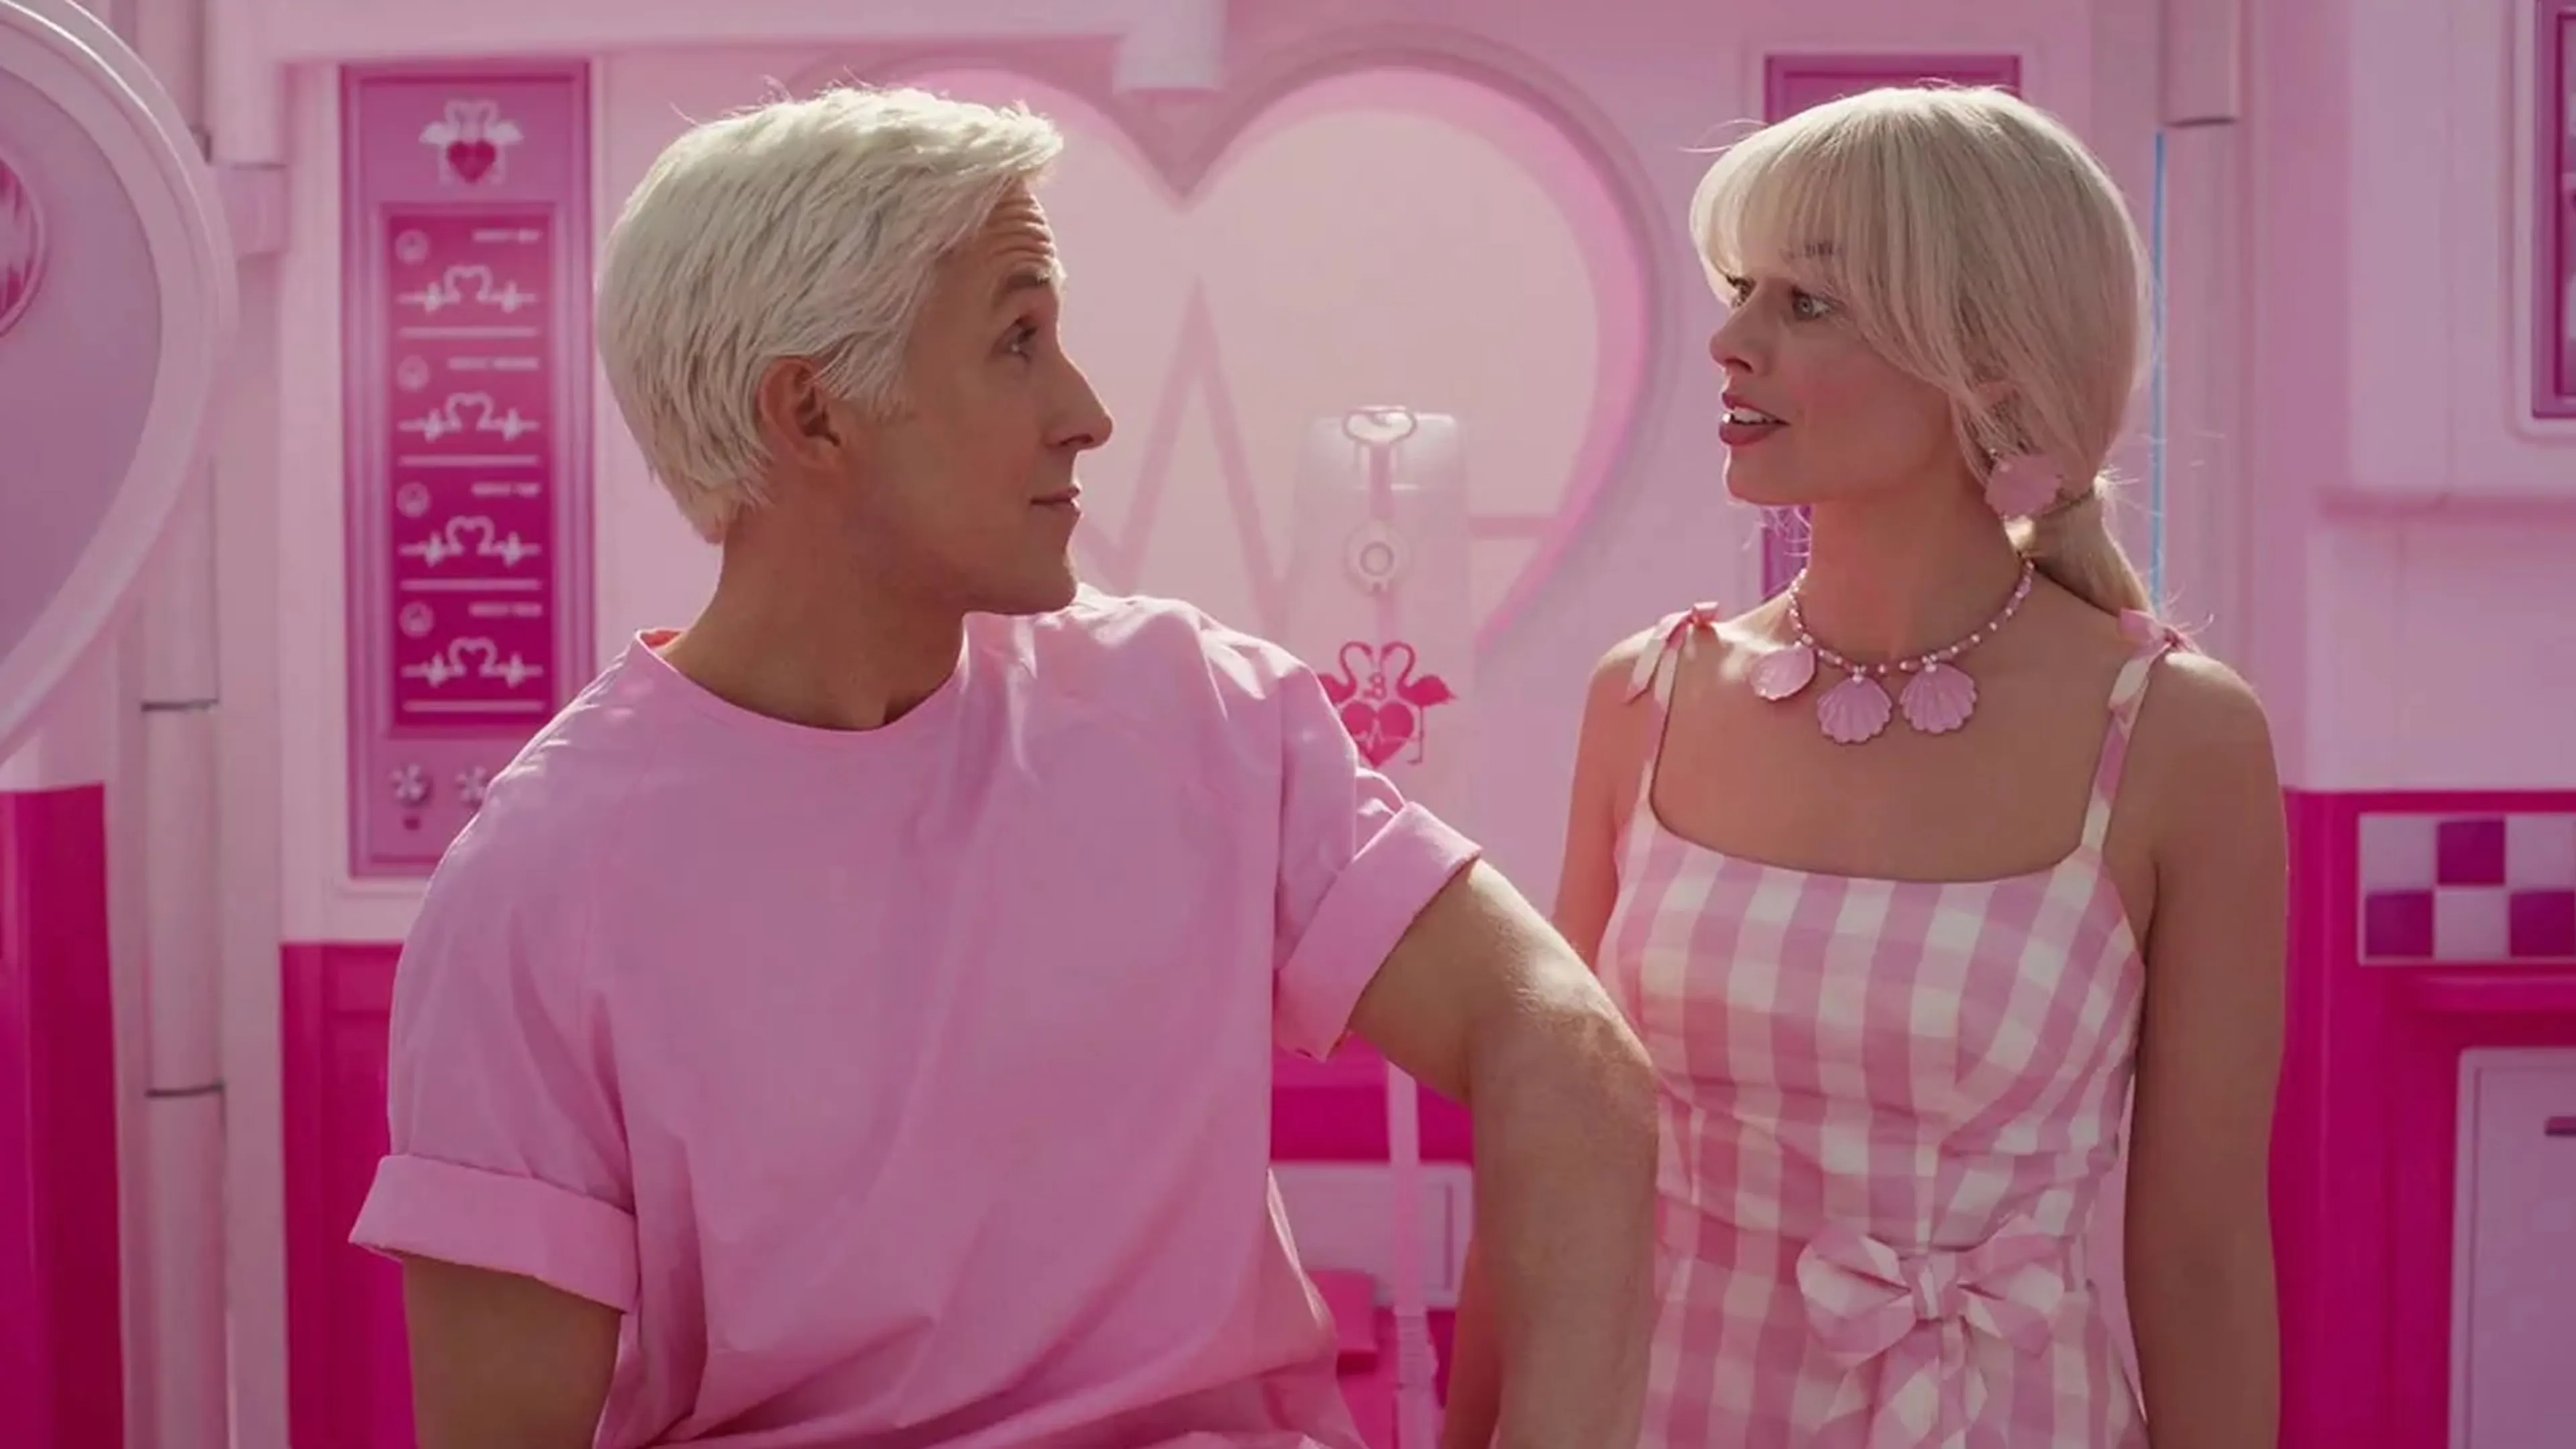 ¿Cuánto cobraron Margot Robbie y Ryan Gosling por protagonizar Barbie? • Canal C